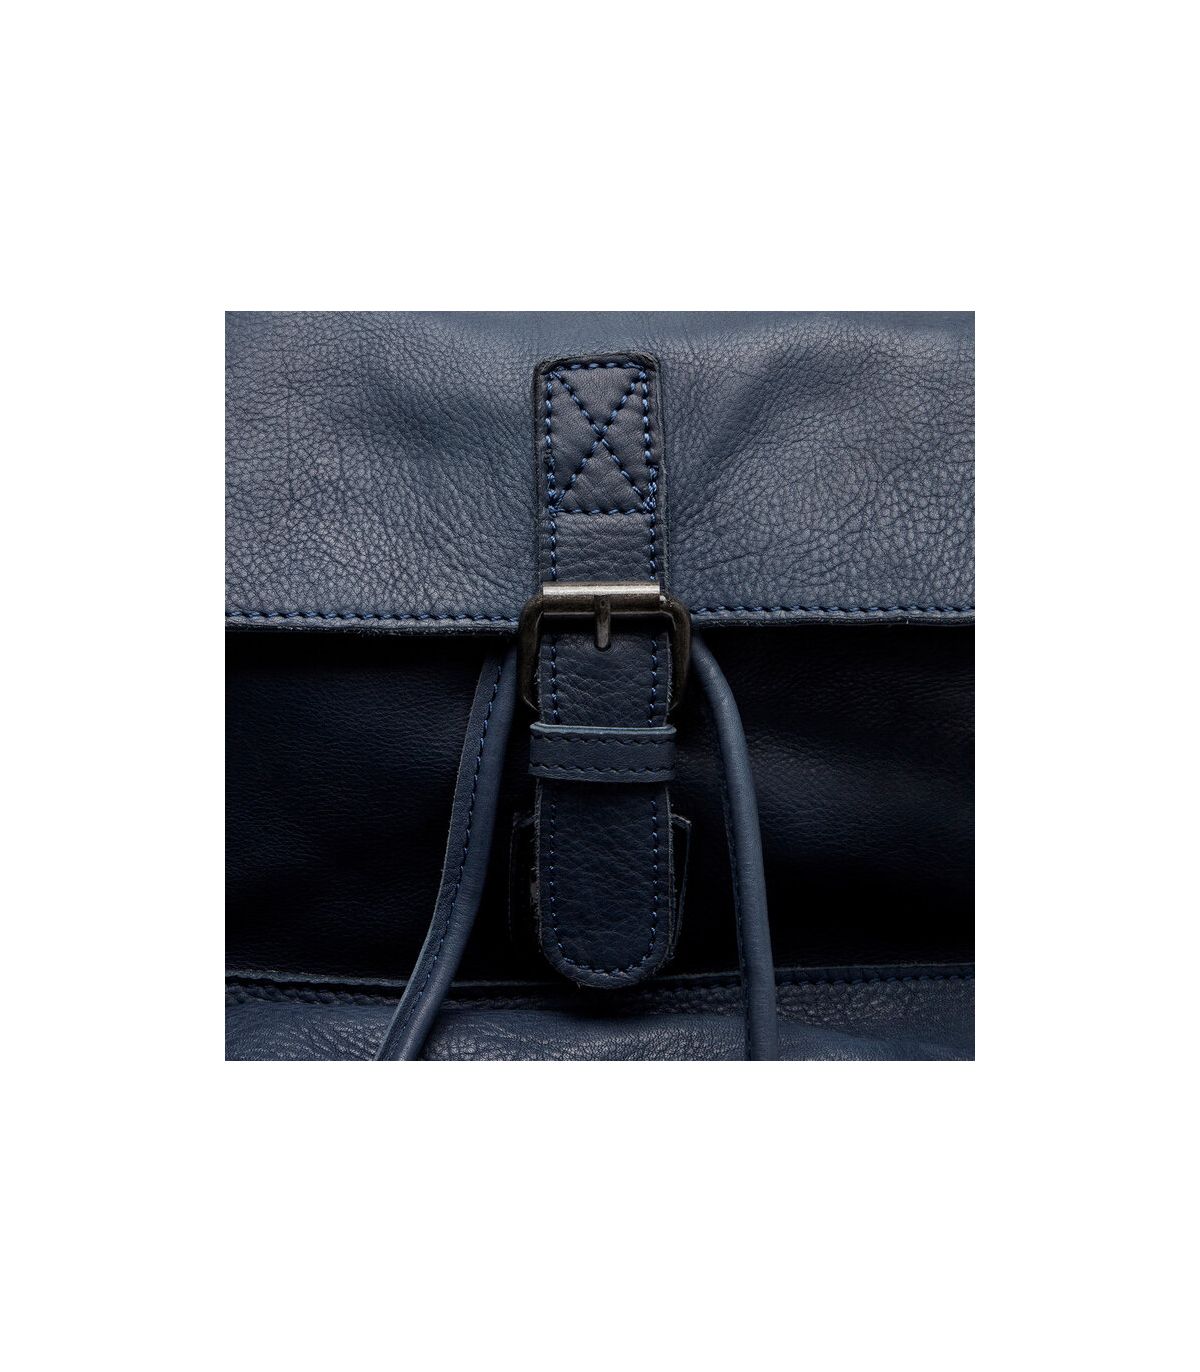 Vintage black leather backpack